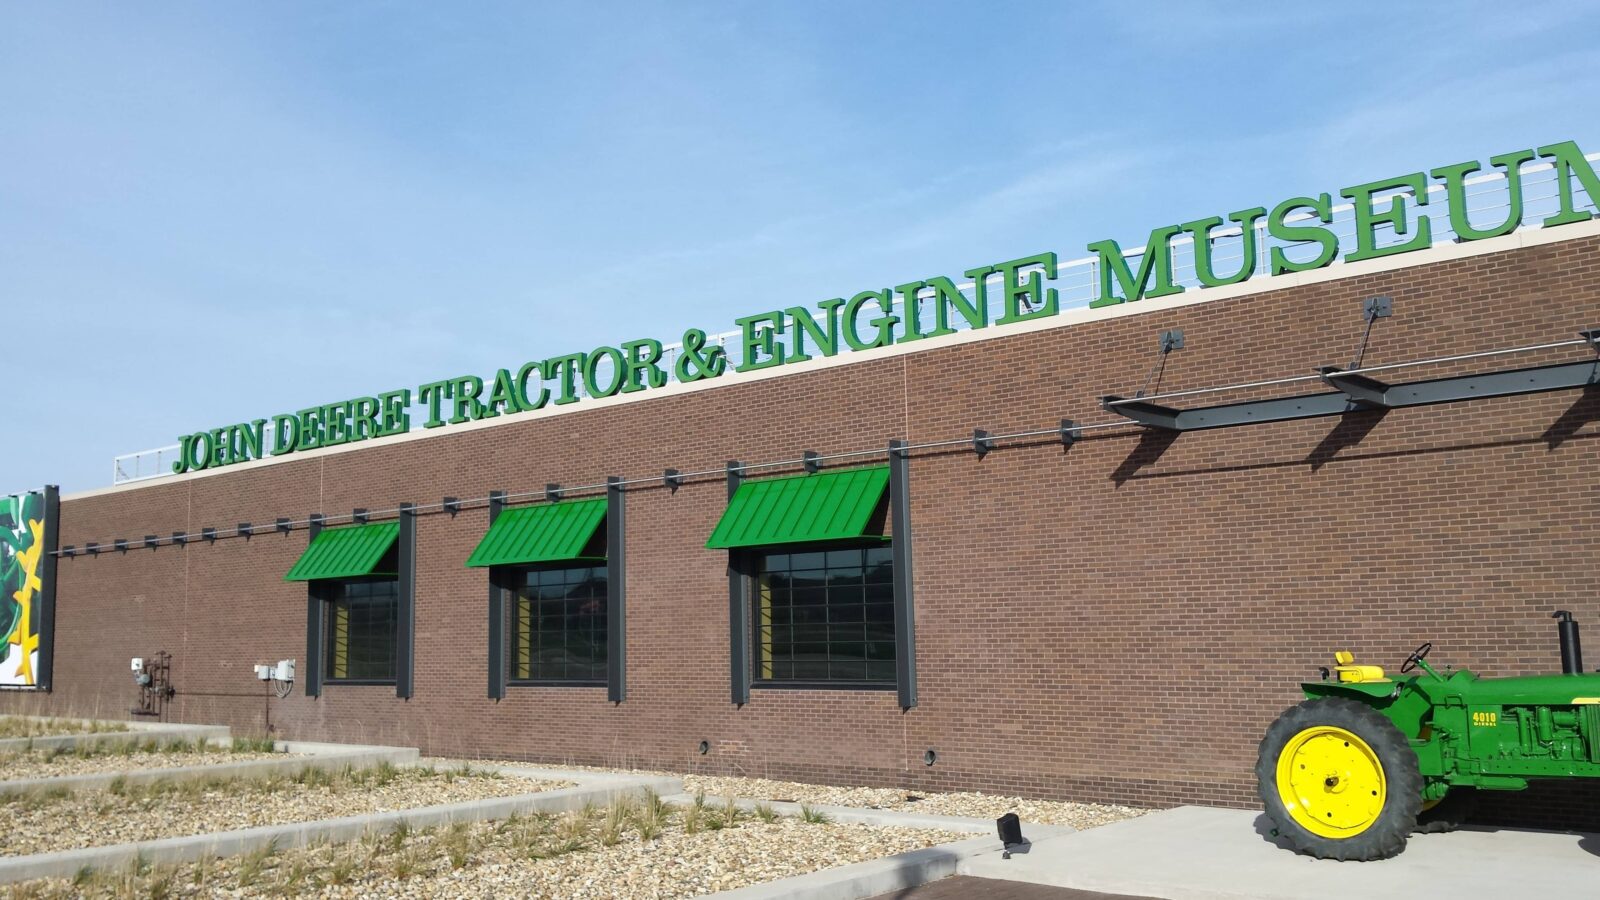 The John Deere Tractor Museum in Waterloo Iowa